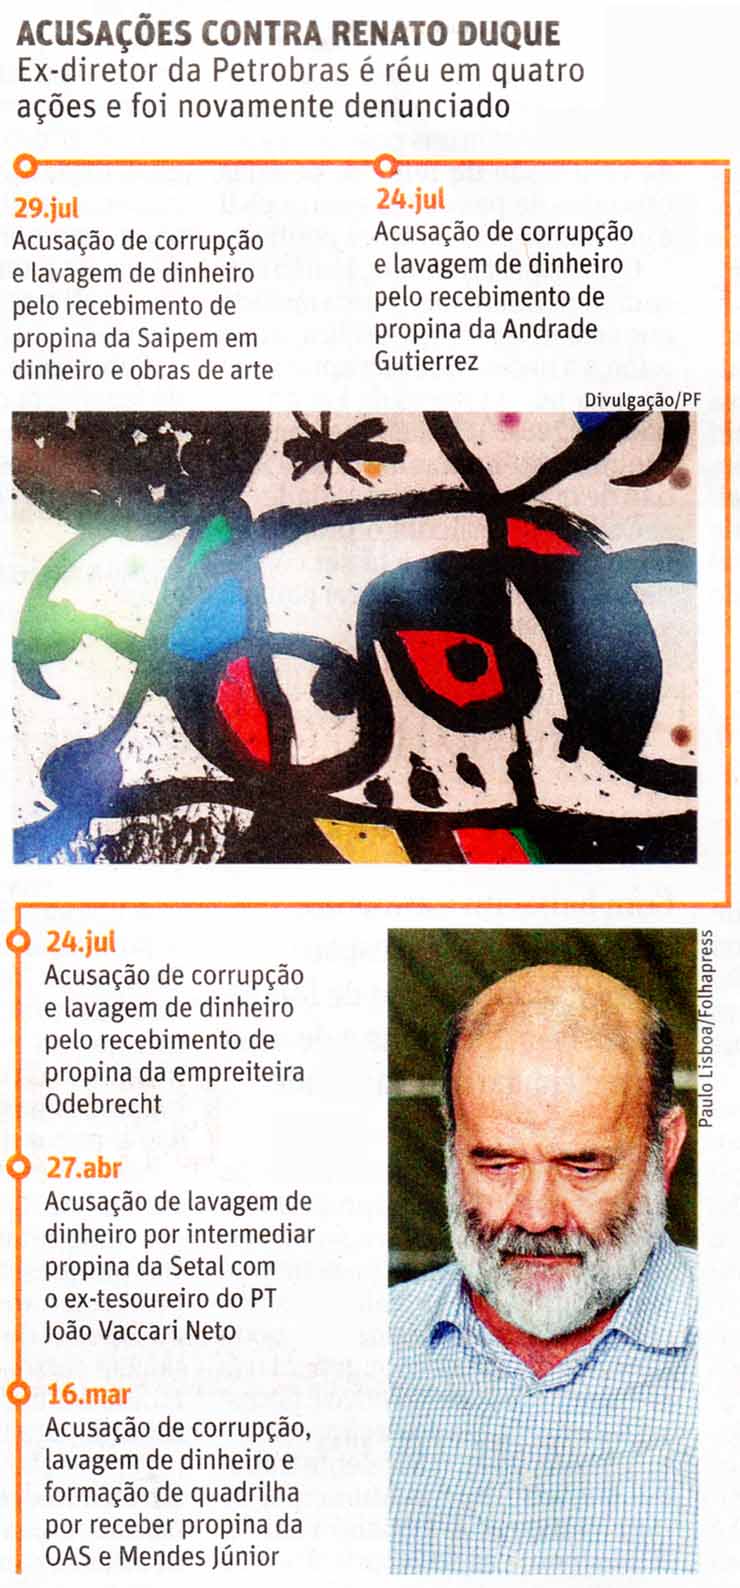 Folha de So Paulo - 30/07/15 - Renato Duque: as acusaes